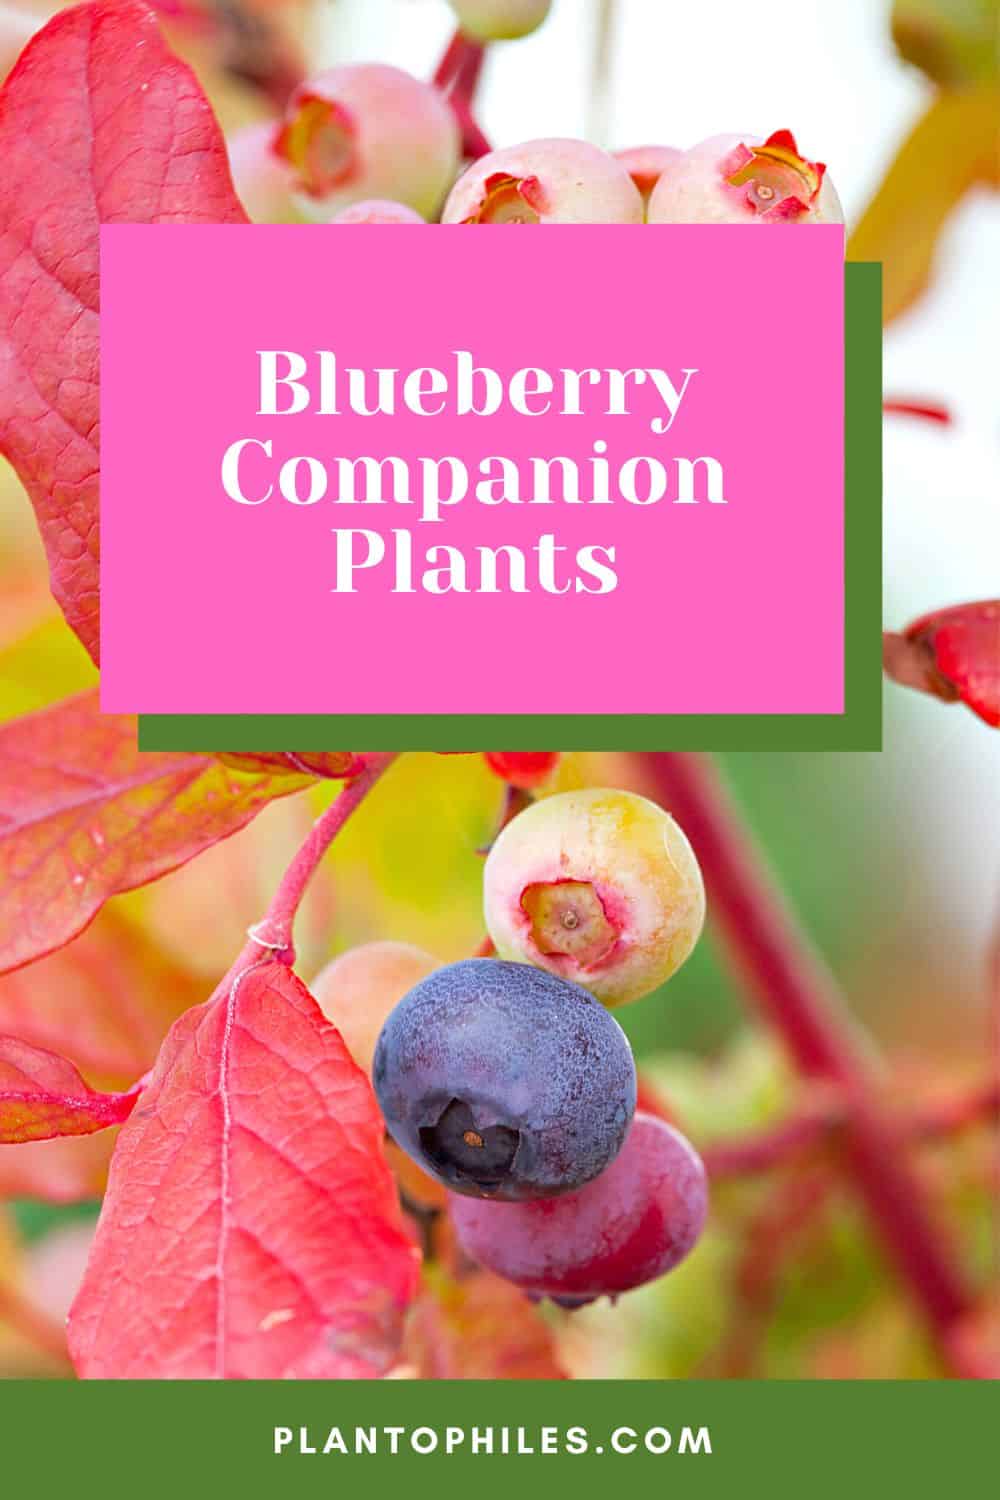 蓝莓伴生植物188金宝慱亚洲体育